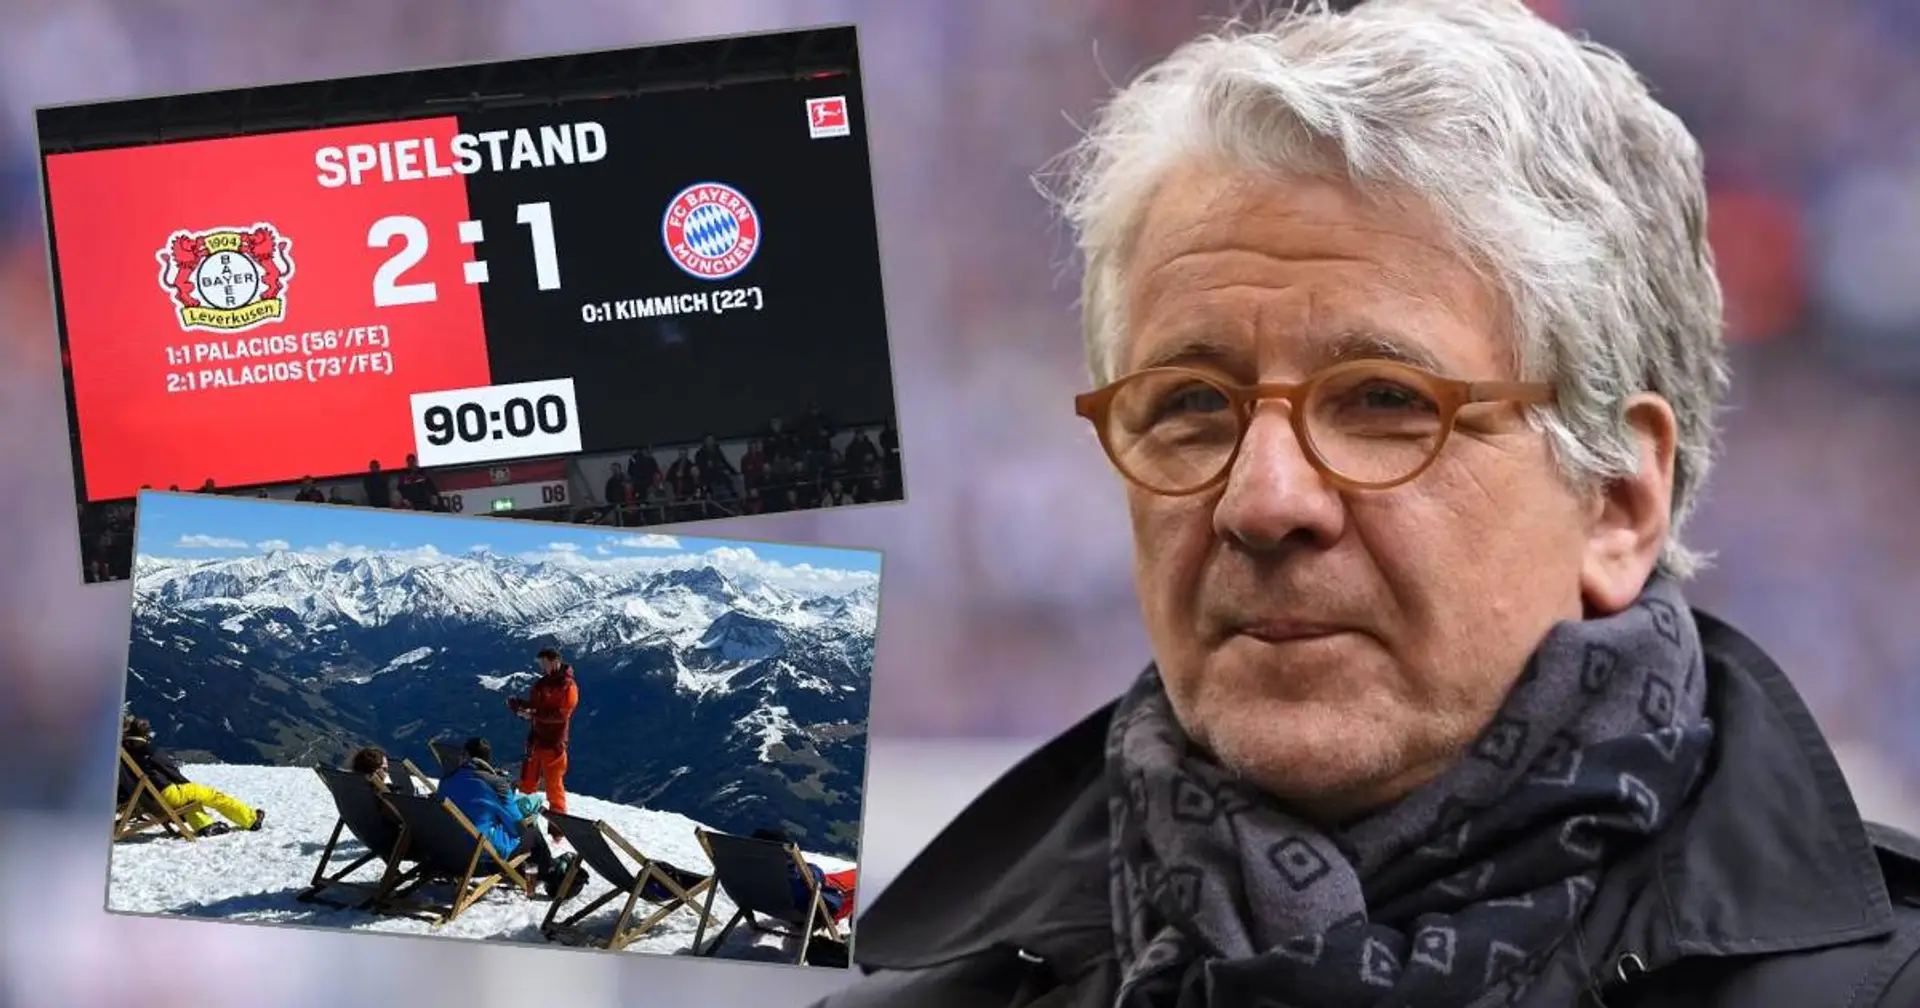 Marcel Reif wundert sich über Kritik des Beraters am Nagelsmann-Aus: "Heile Welt im Zillertal, aber dein Team hat gerade so ein Spiel abgeliefert..."